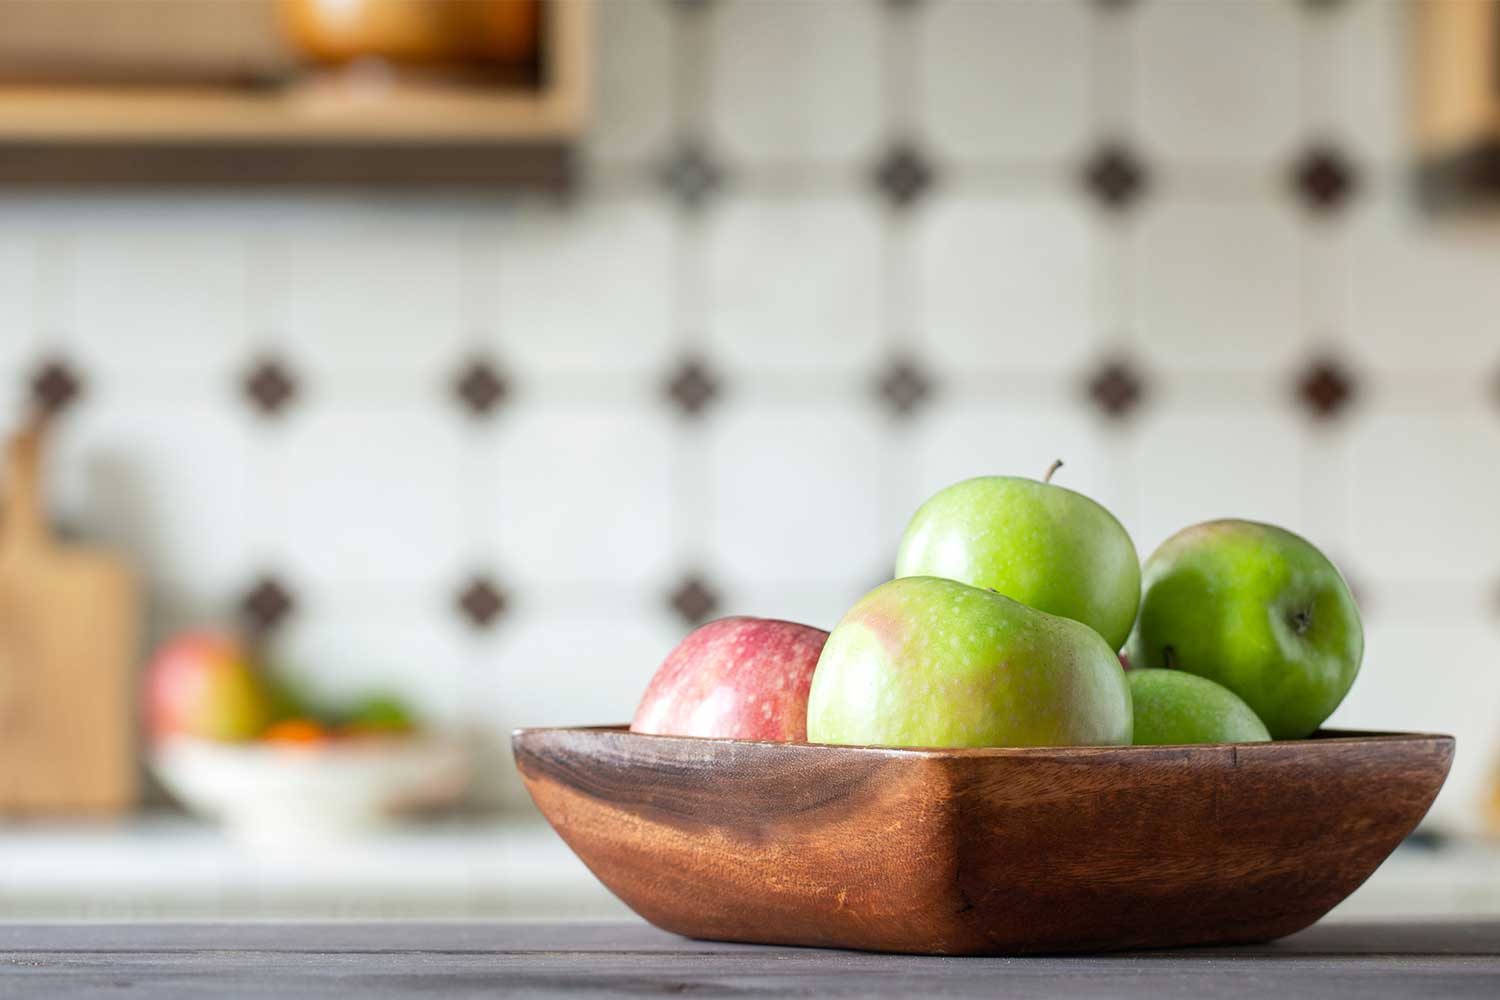 http://www.bhg.com.au/media/38370/apples-in-wooden-fruit-bowl.jpg